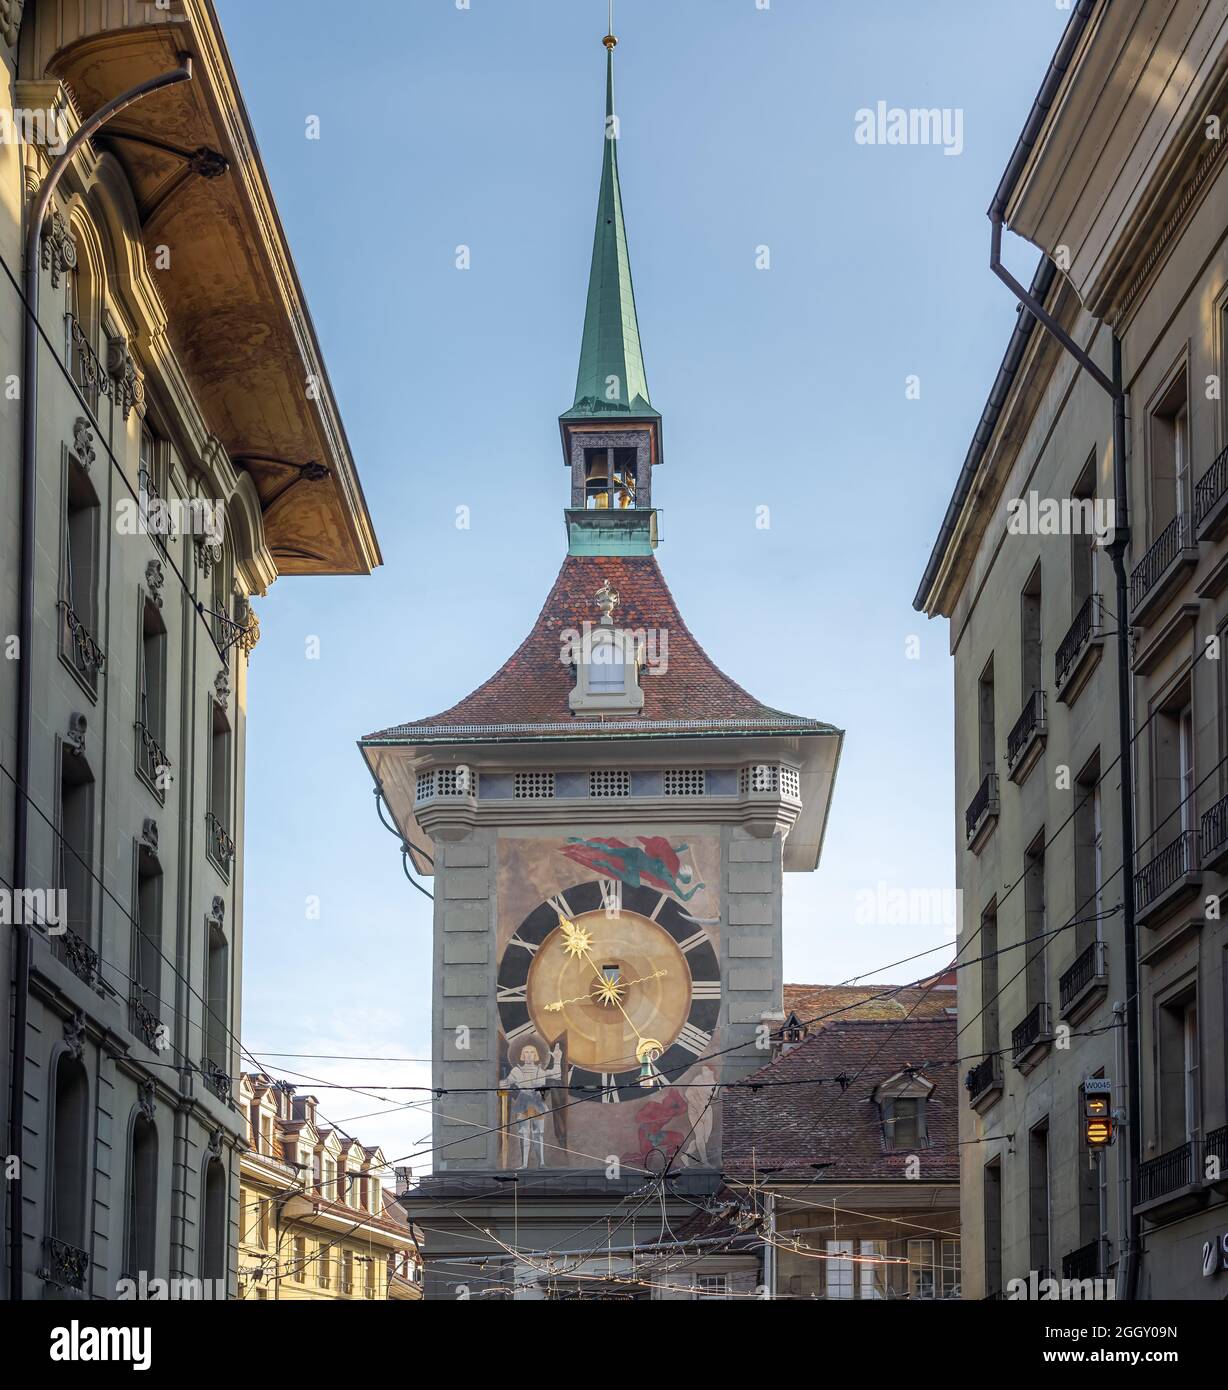 Façade occidentale de Zytglogge - Tour de l'horloge médiévale - Berne, Suisse Banque D'Images